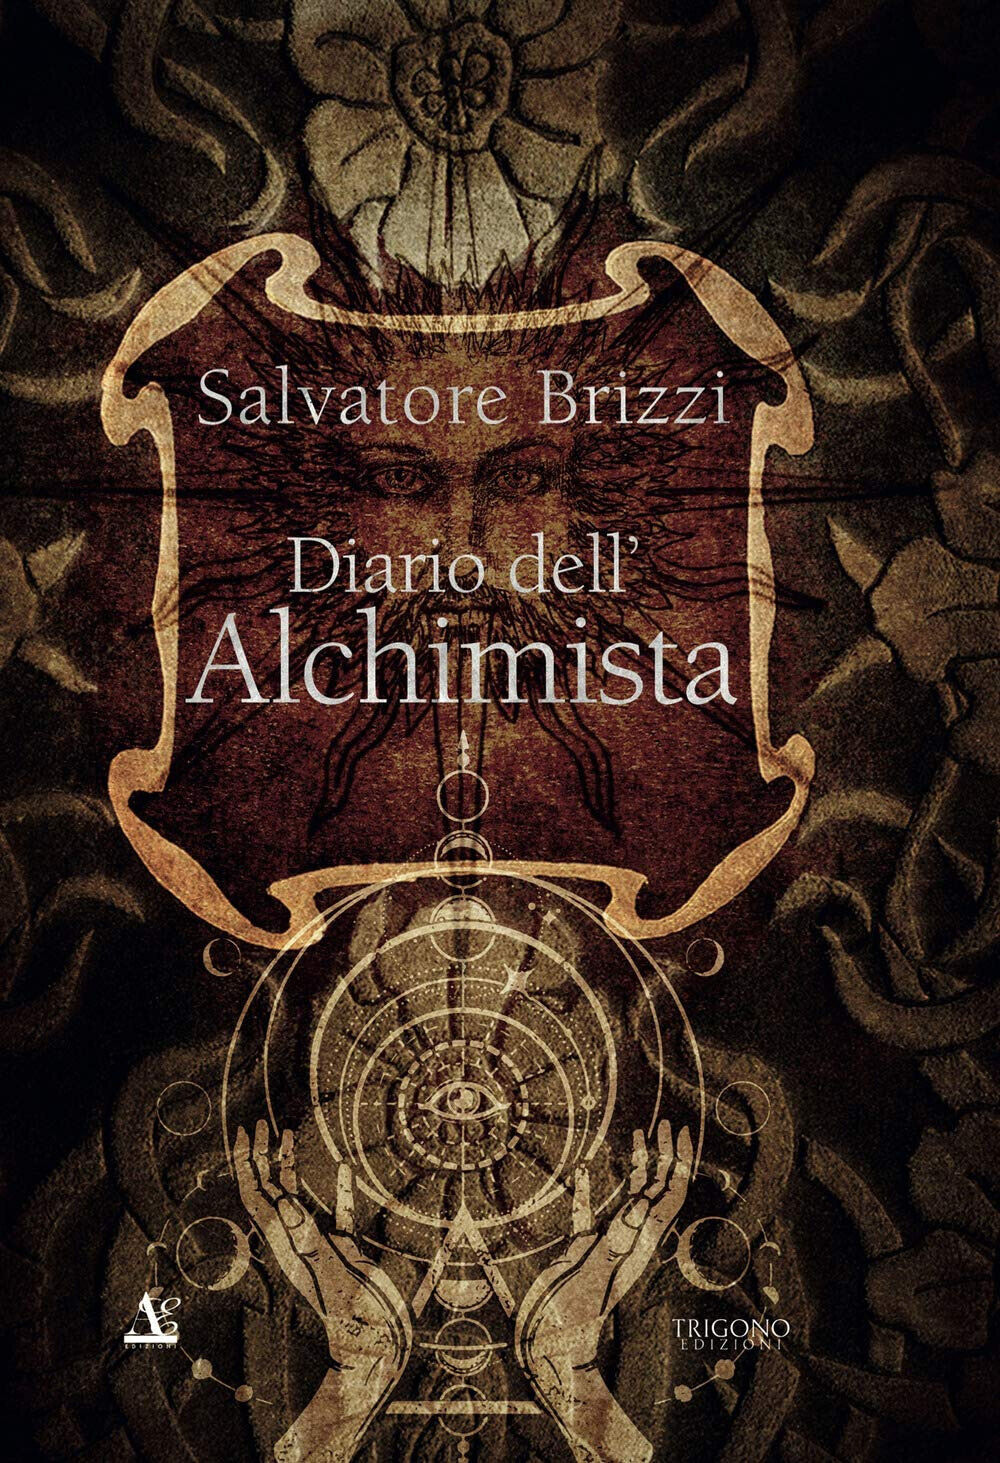 Diario dell alchimista - Salvatore Brizzi - Trigono, 2020